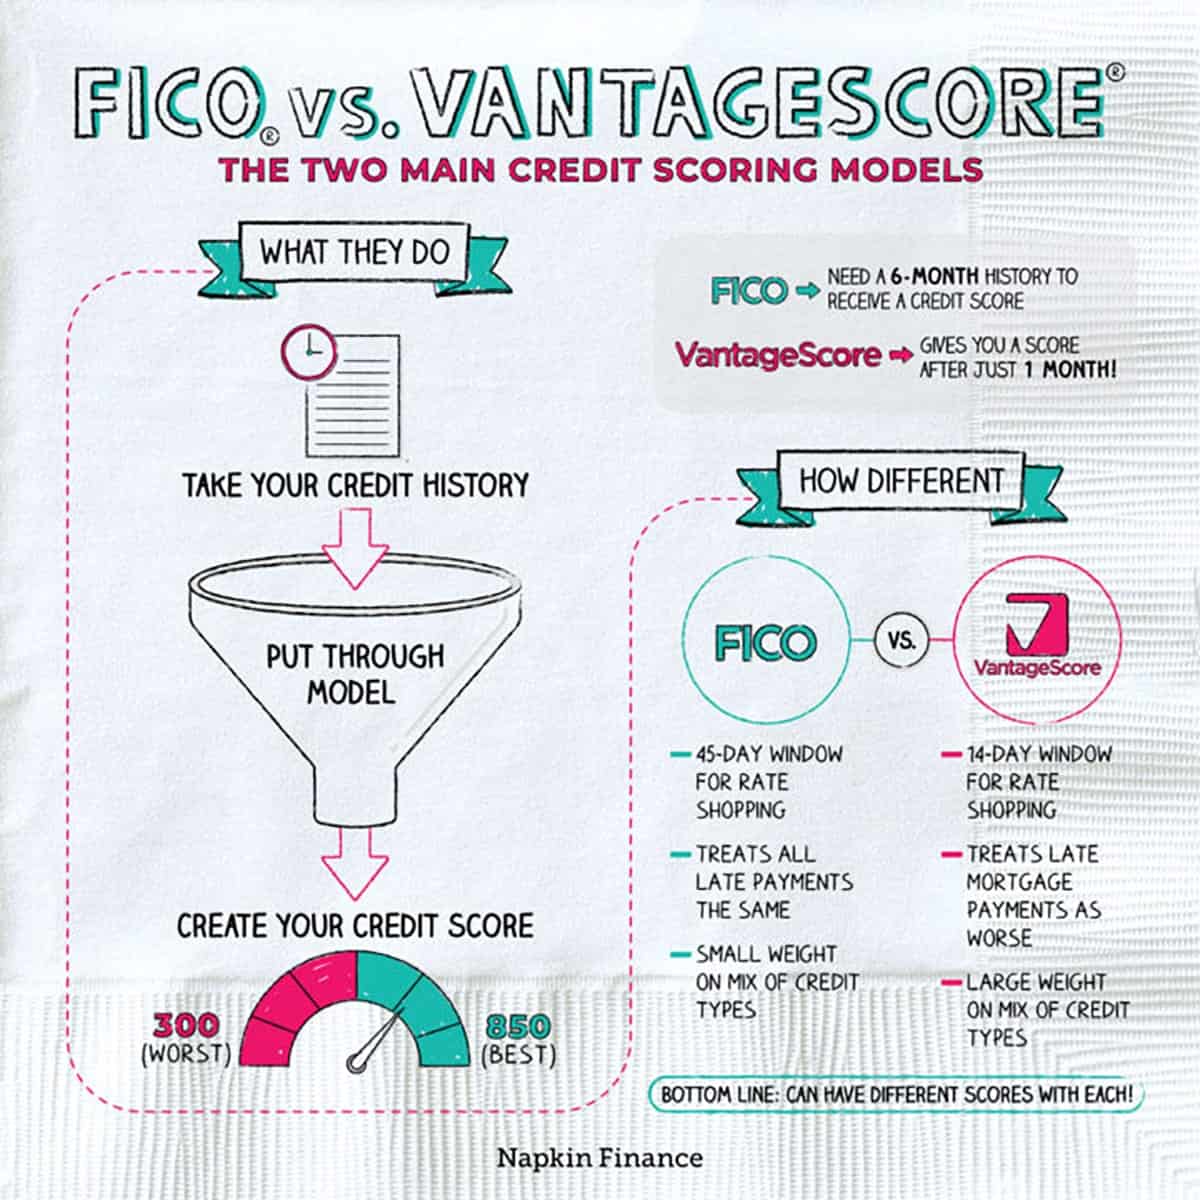 Fico vs VantageScore